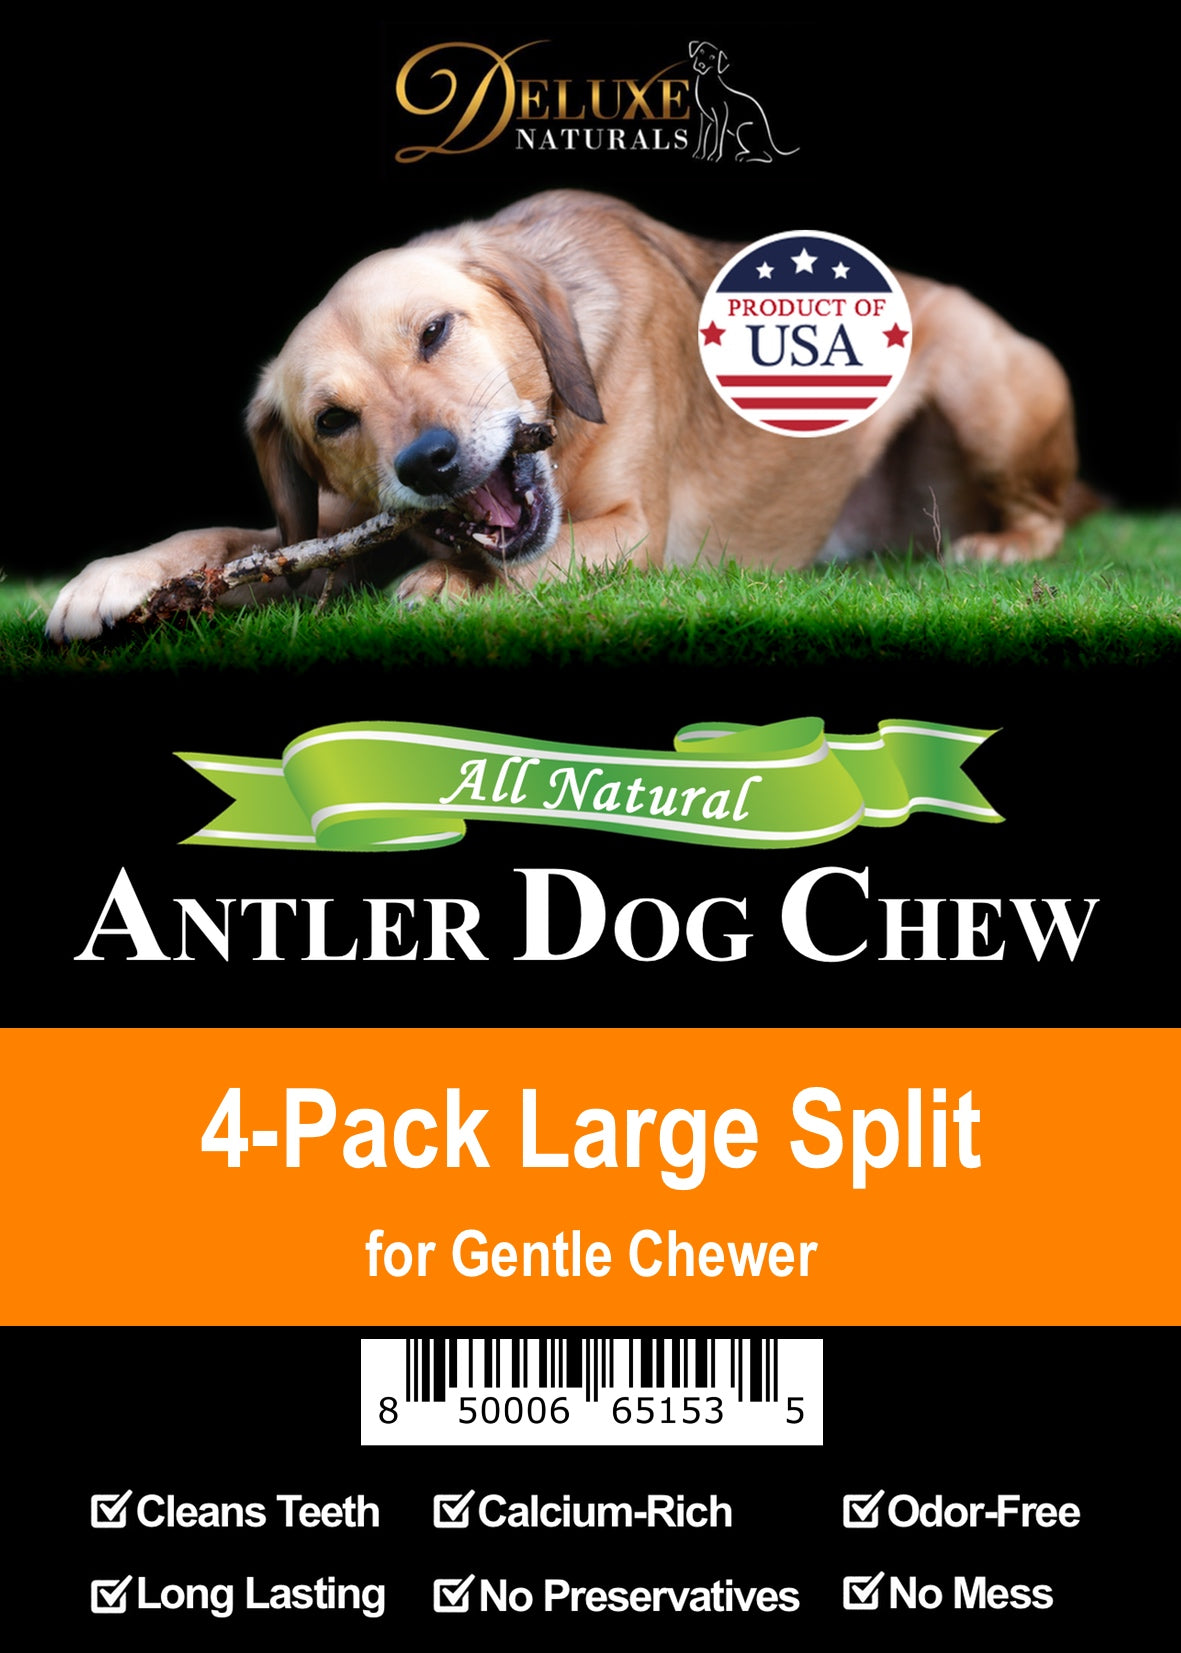 Deluxe Naturals 4-Pack Elk Antler Dog Chew - Large Split